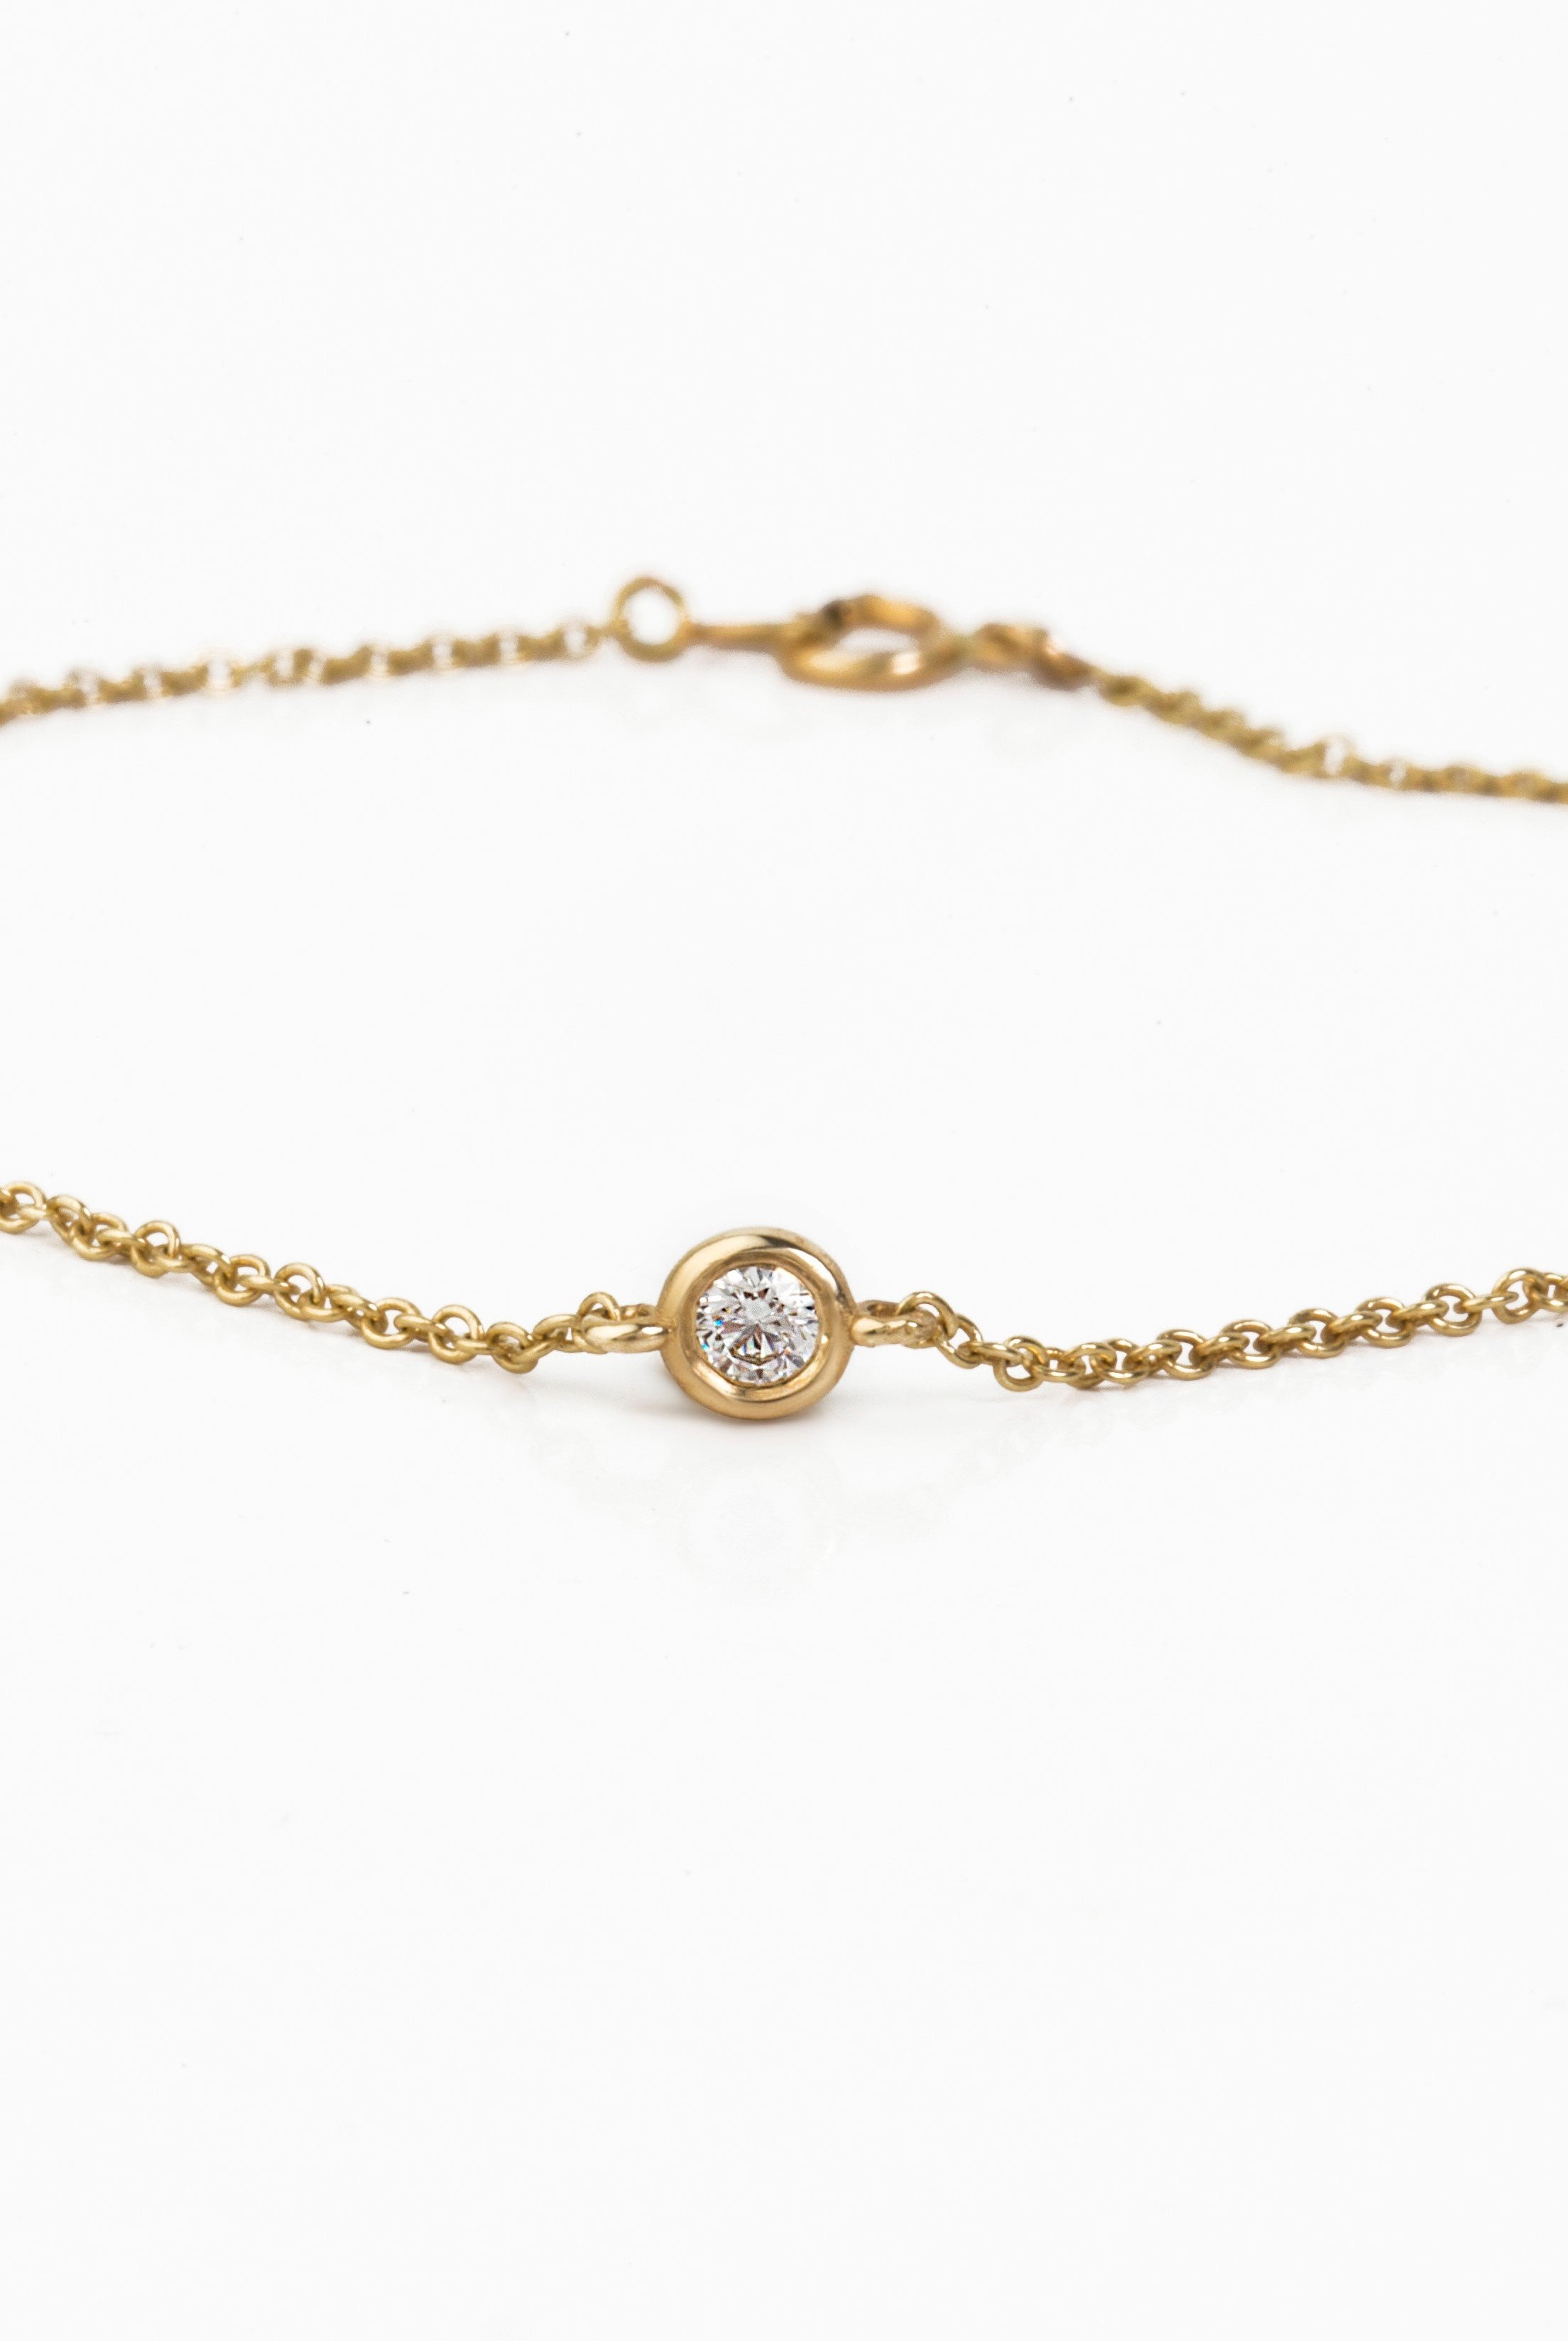 DIAMOND BRACELET - Danelian Jewelry